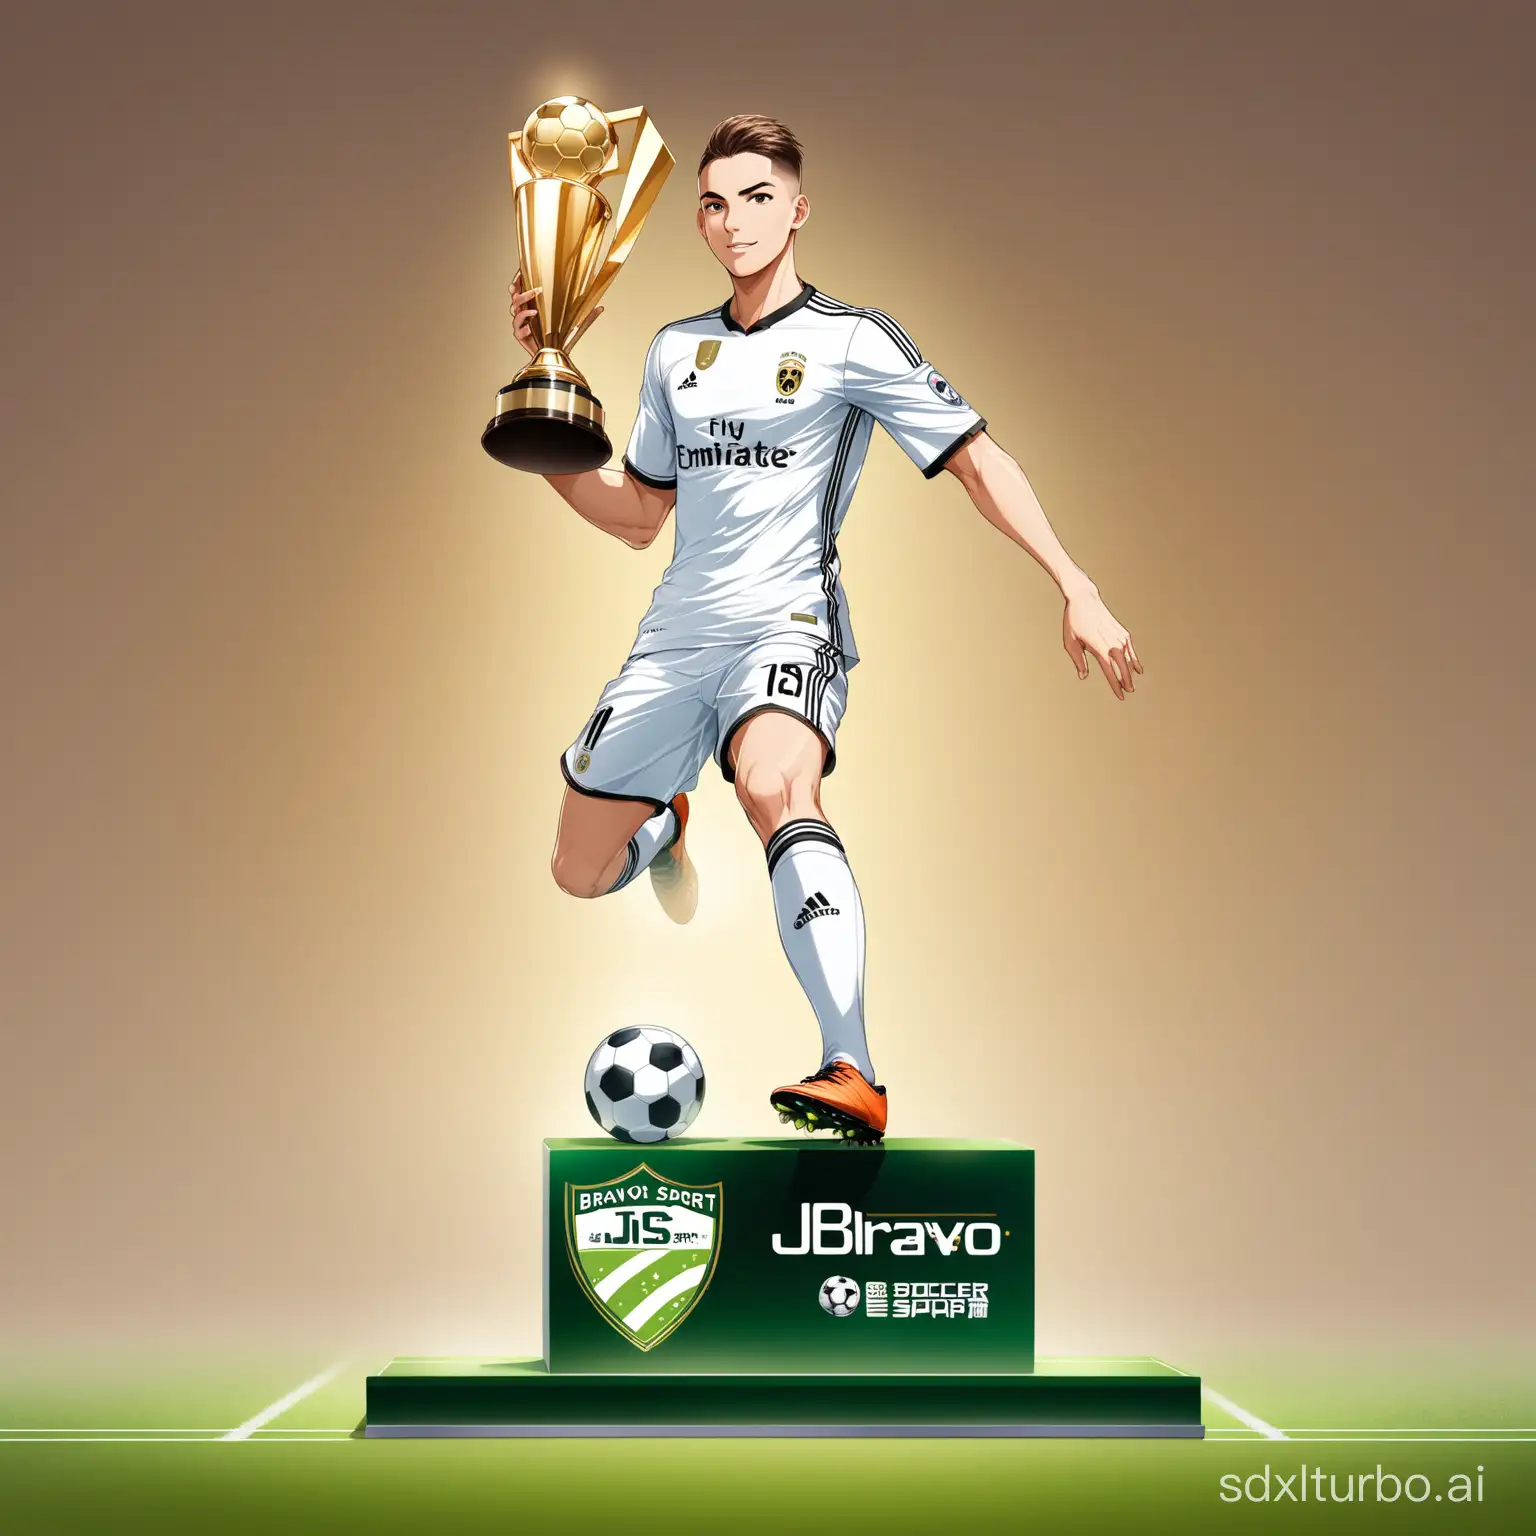 Tú cómo experto en diseño gráfico, créame un jugador de fútbol 11 recibiendo un trofeo y que en la parte de atrás se vea un rótulo que ponga el nombre de 
JS BRAVO SPORT